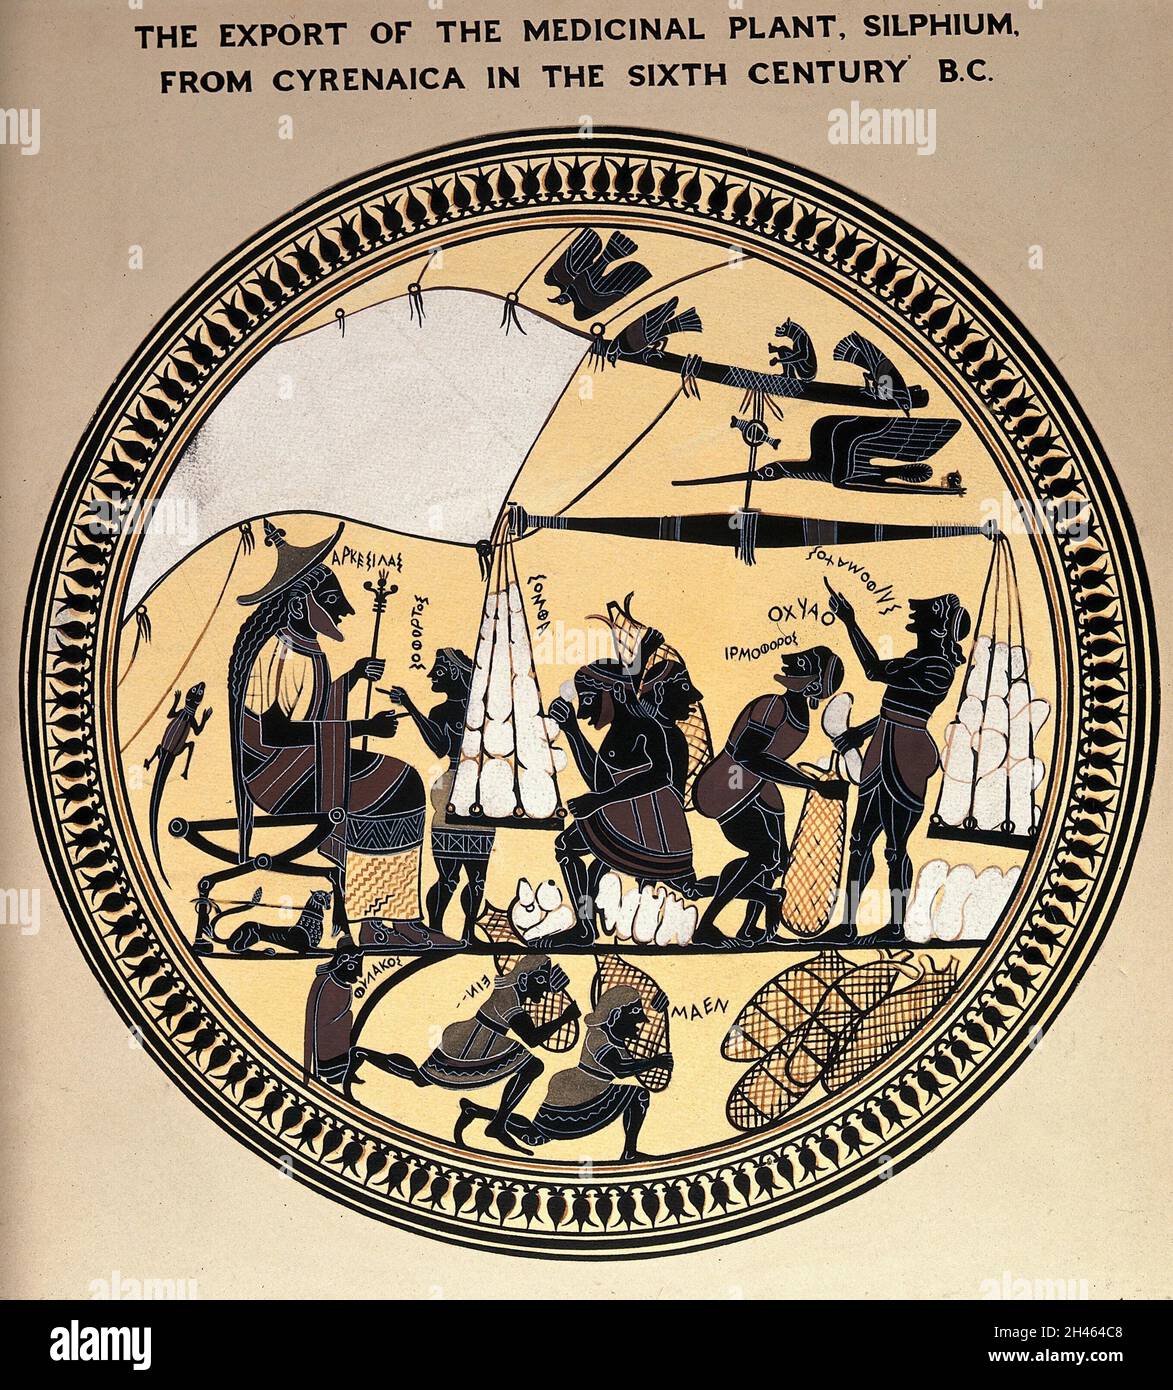 König Arcesilas von Cyrenaica beaufsichtigt die Verpackung von Silphium (der Haupteinnahmequelle des Landes) in Schiffe für den Export. Gouache Gemälde nach einem Spartan cylix, c. 580-550 V. CHR. Stockfoto